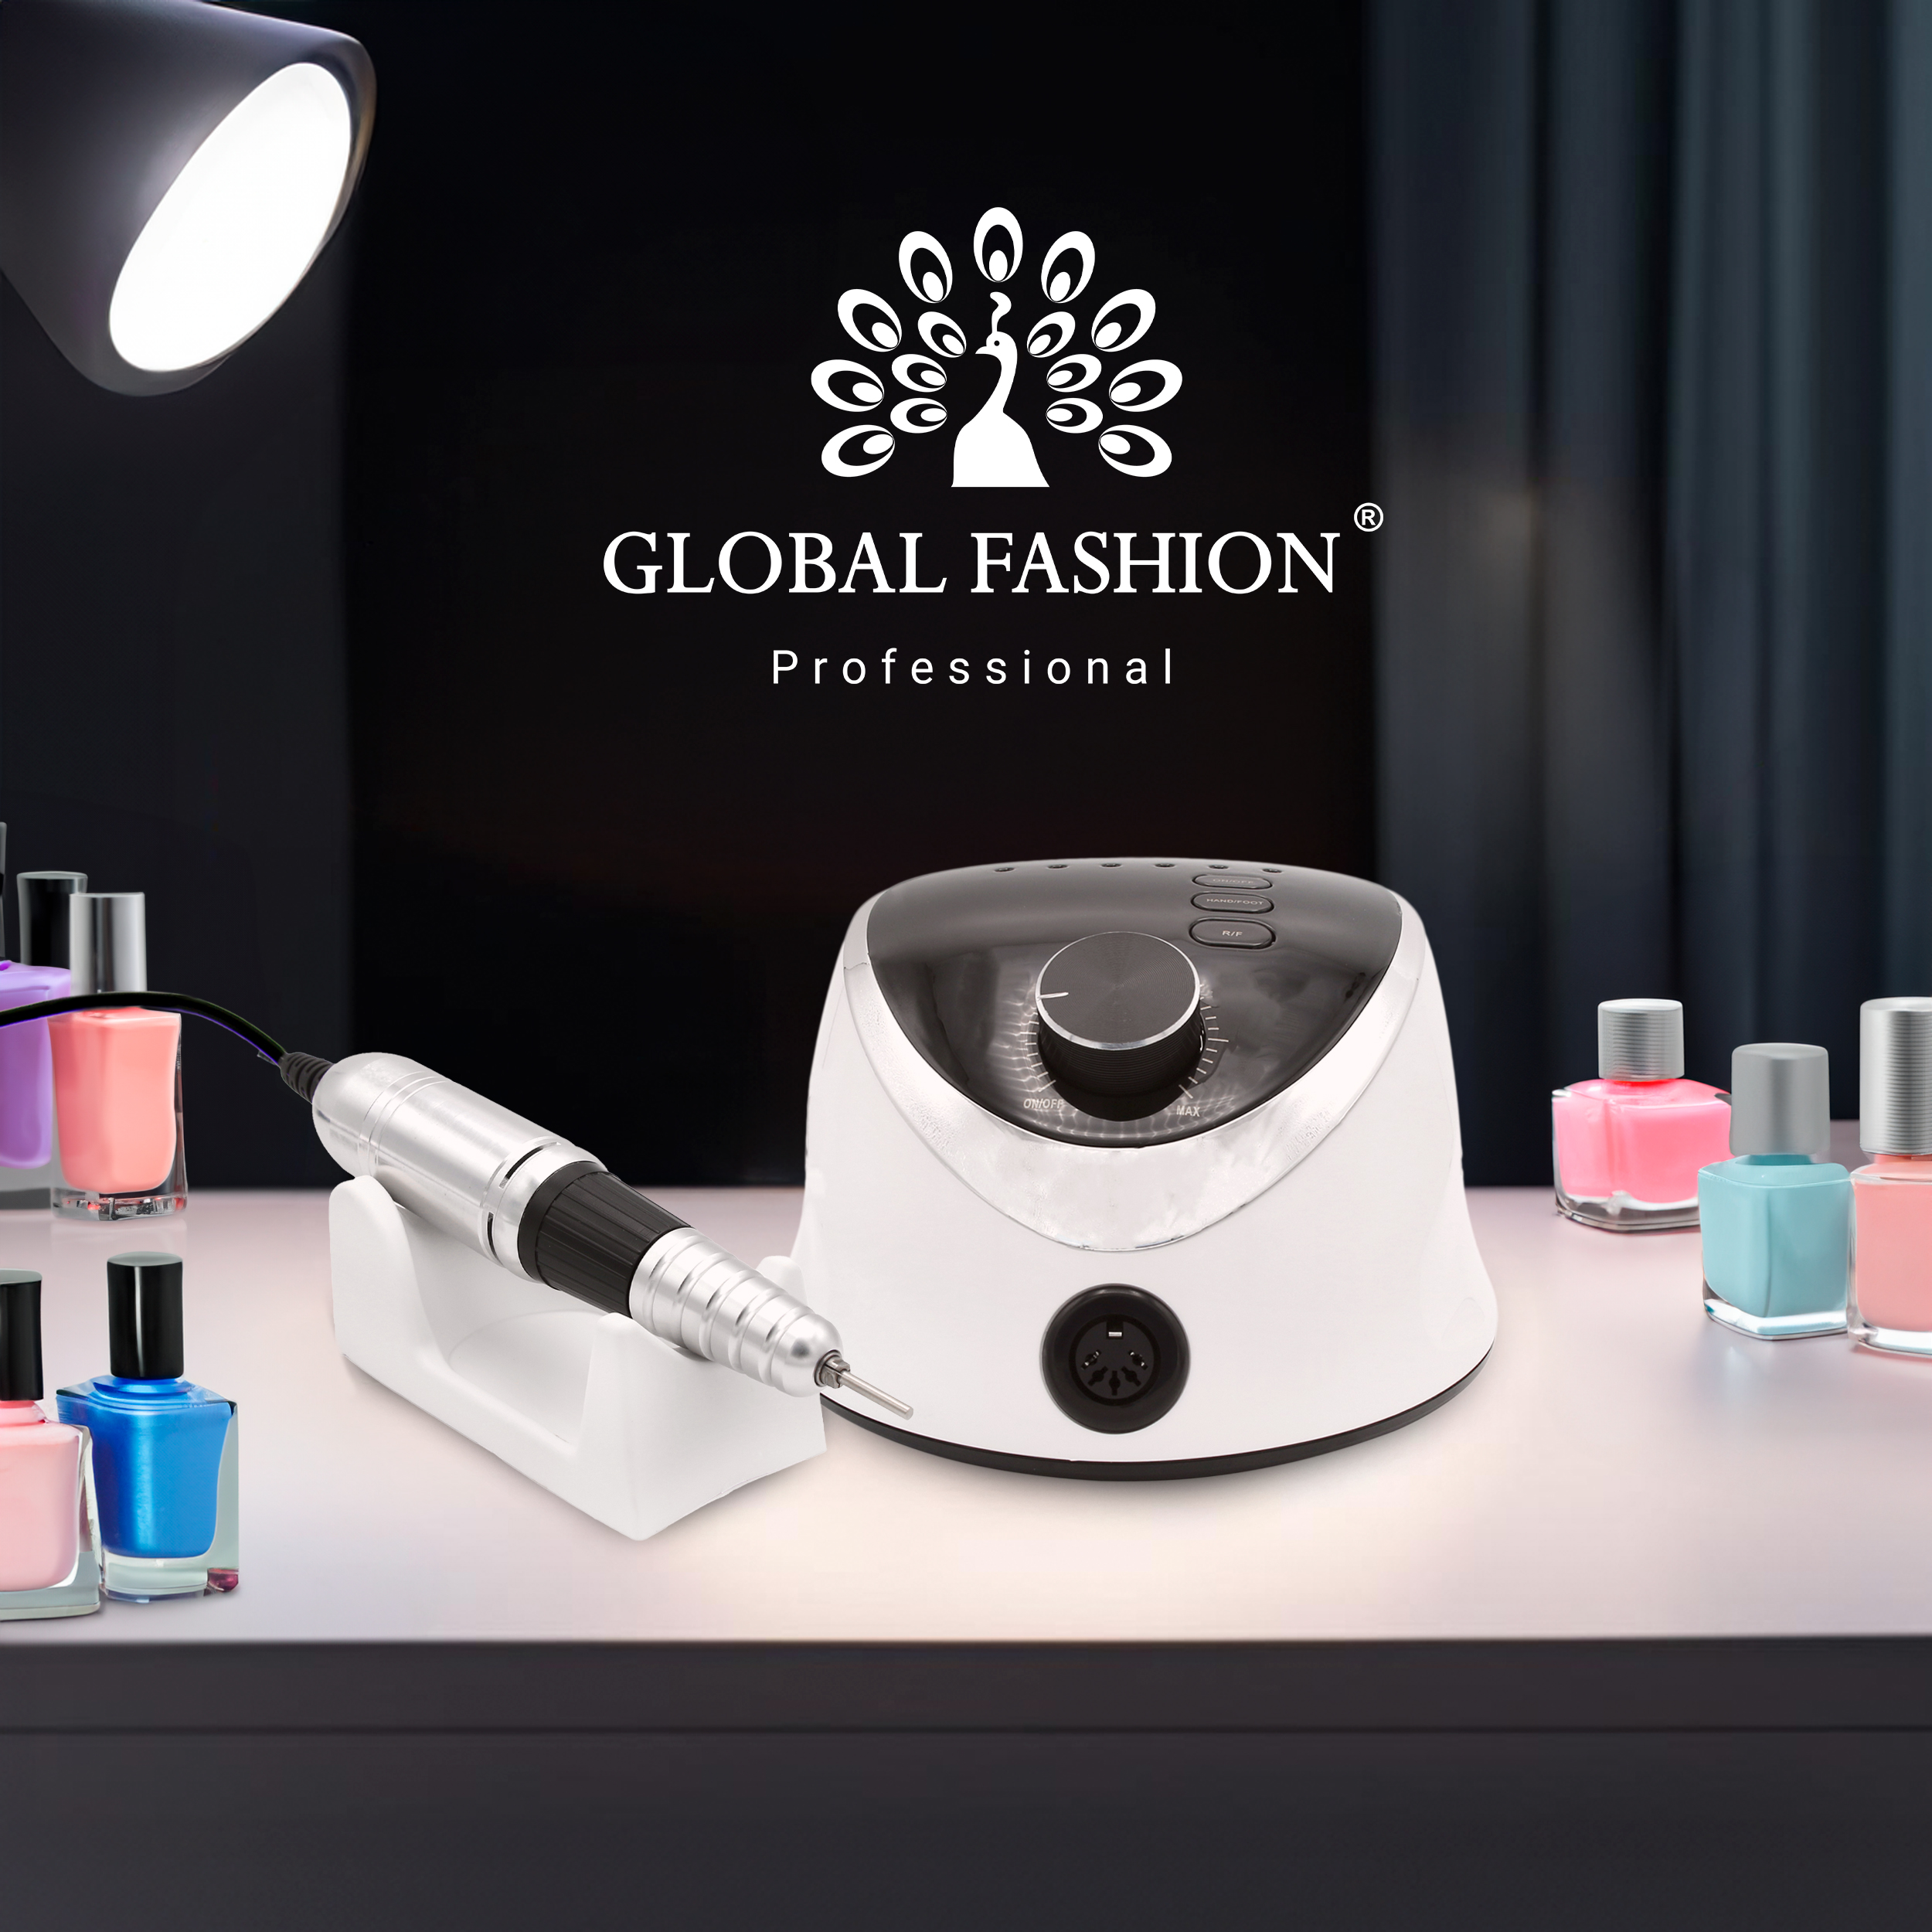 Профессиональный аппарат для маникюра и педикюра M12 Global Fashion 68Вт 35000 об/мин - топовый продукт от Global Fashion